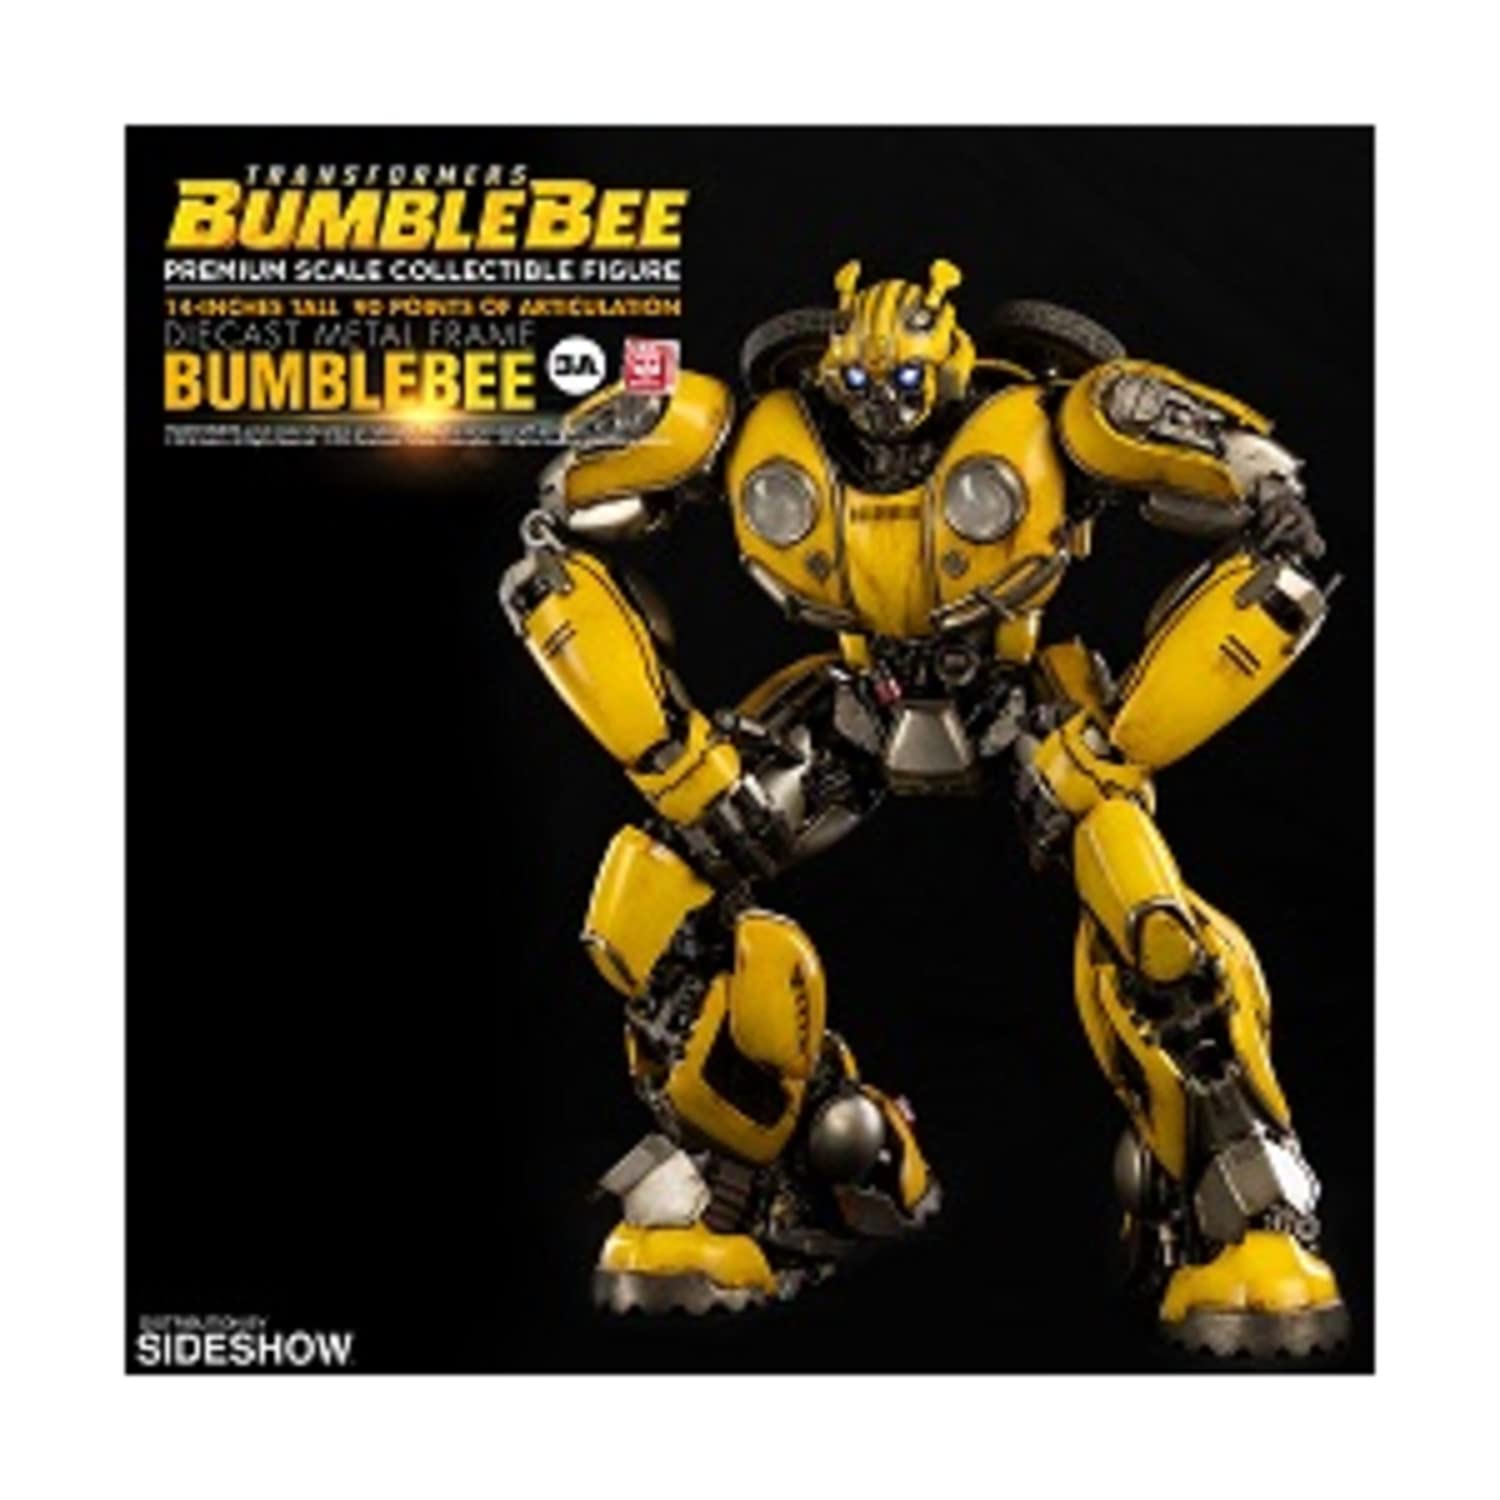 Transformers Bumblebee Premium Scale Figure Threezero 904675